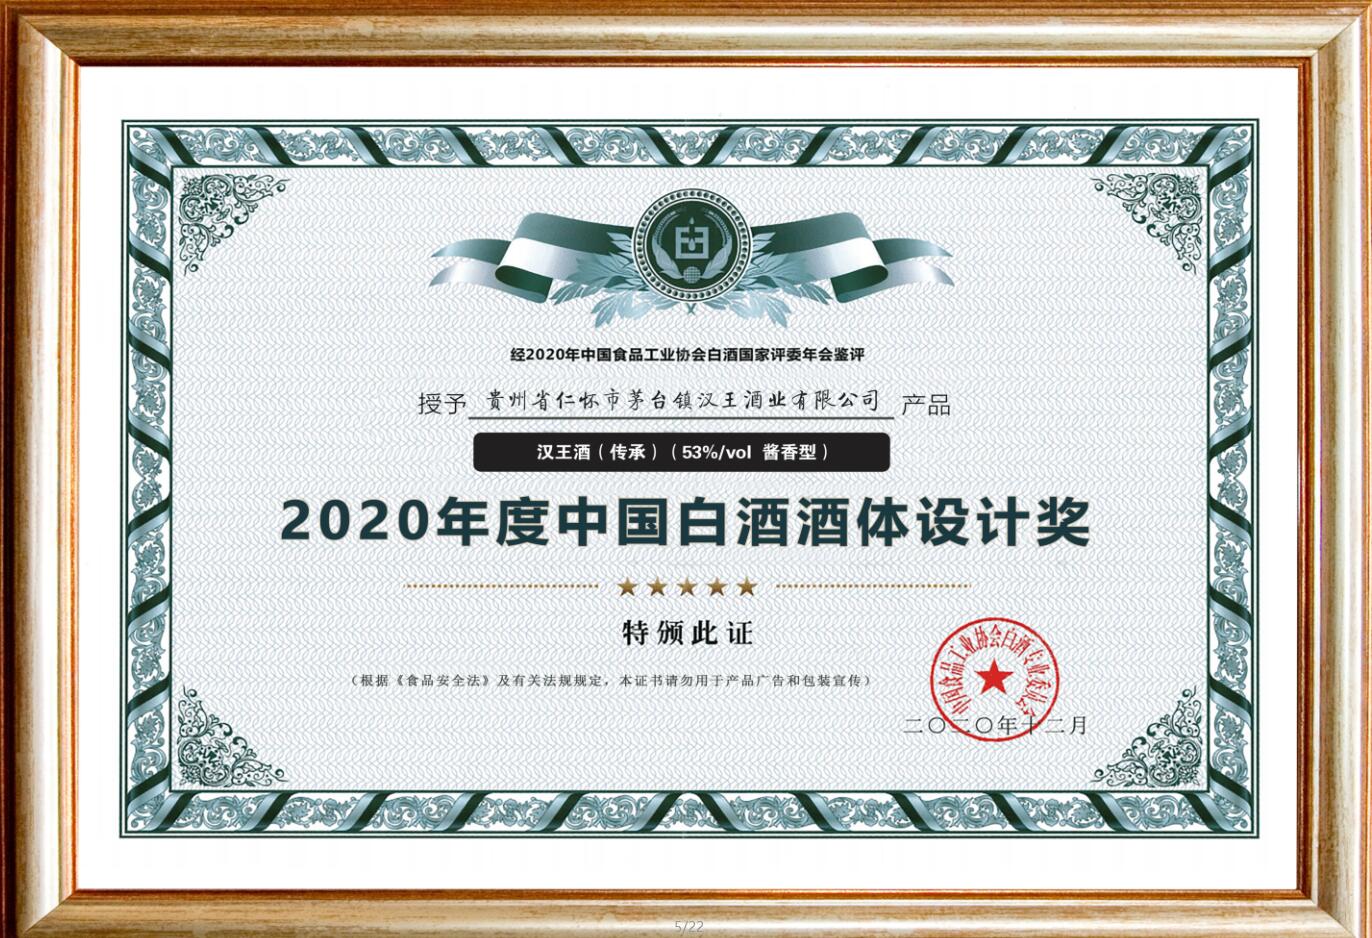 2020年度中国白酒酒体设计奖